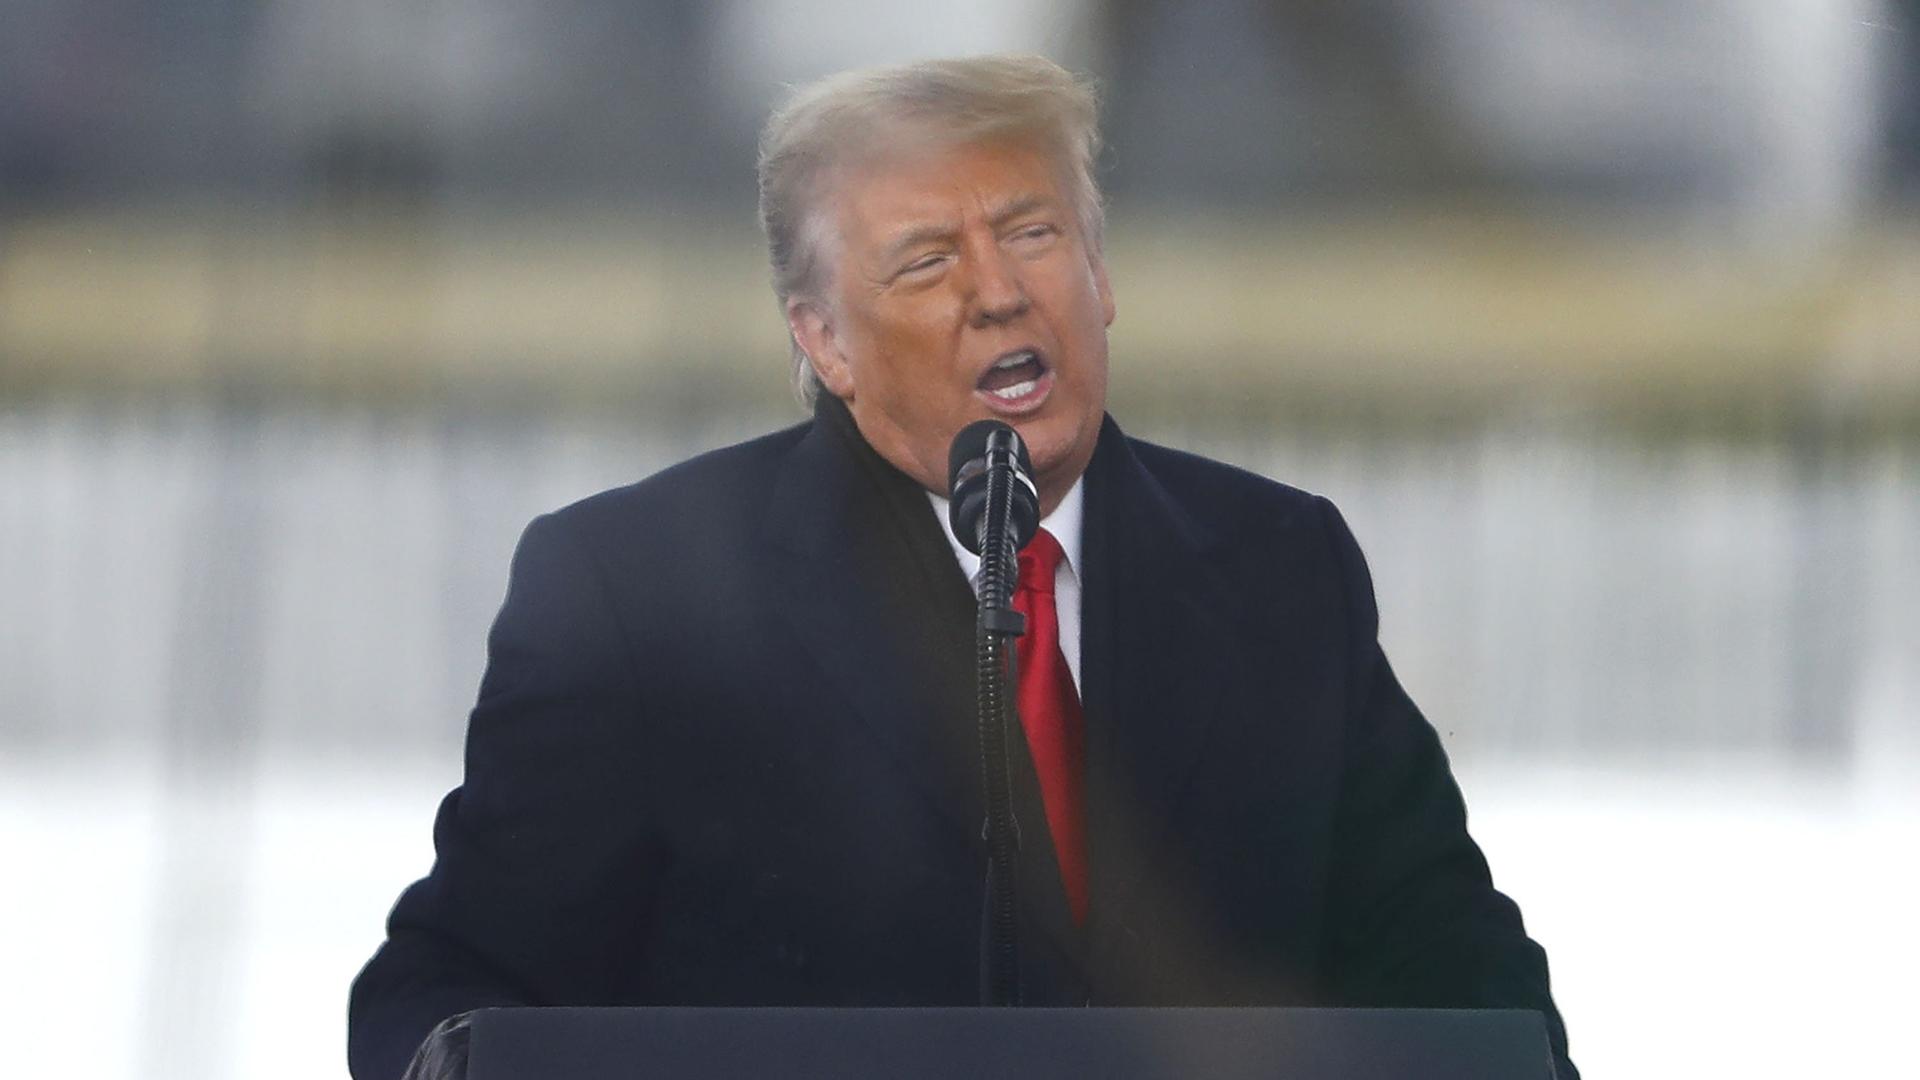 Trump steht im dunklen Wintermantel und mit roter Krawatte an einem Rednerpult mit dem Präsidentensiegel und sptricht in ein Mikrofon.